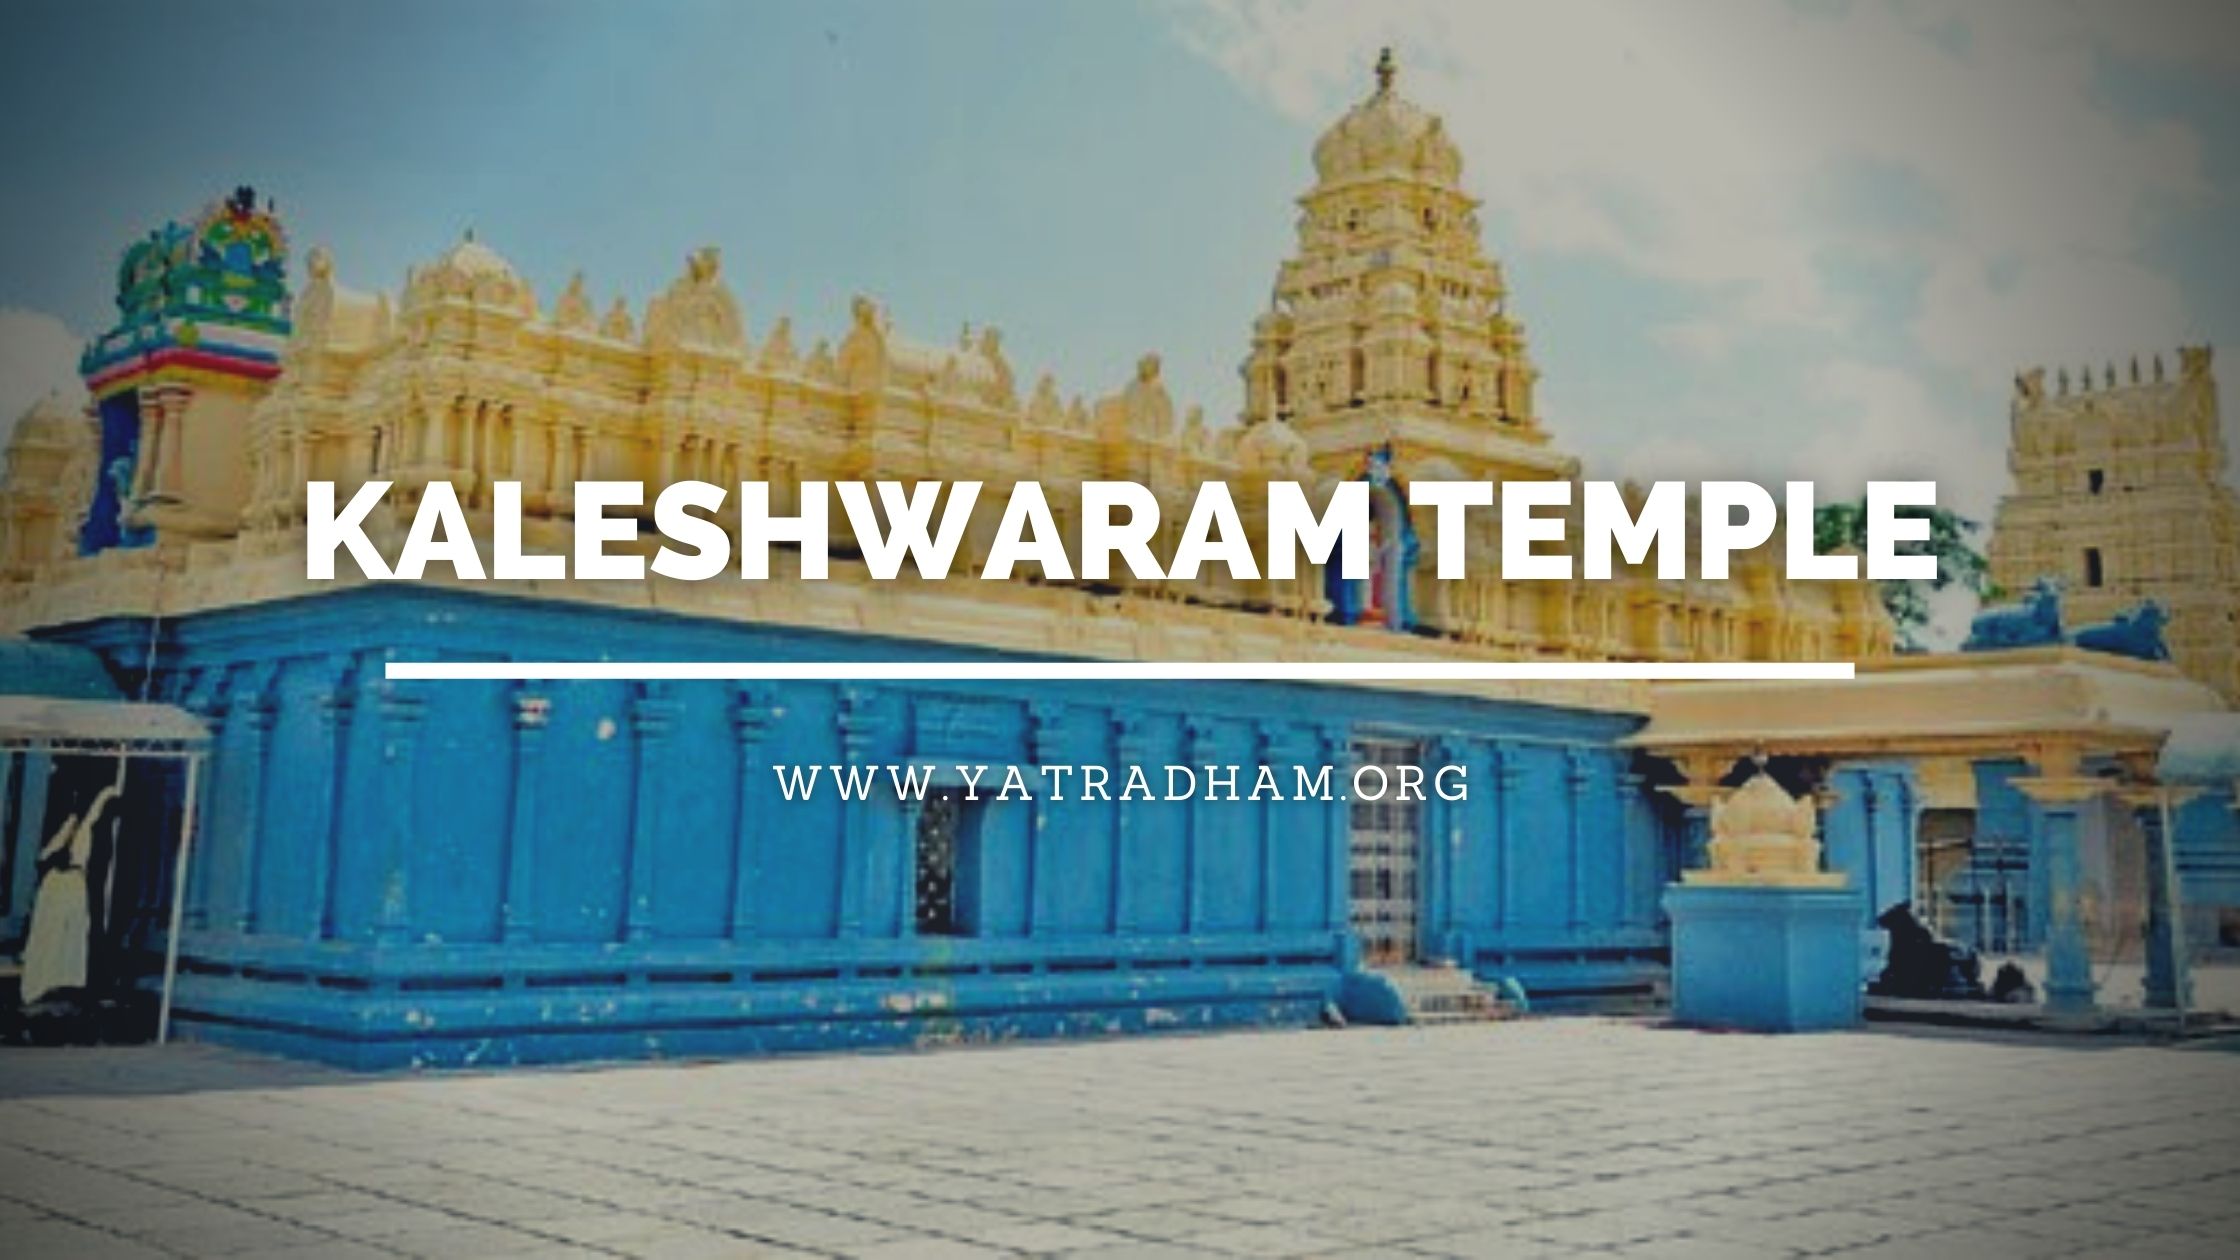 kaleshwaram temple Images